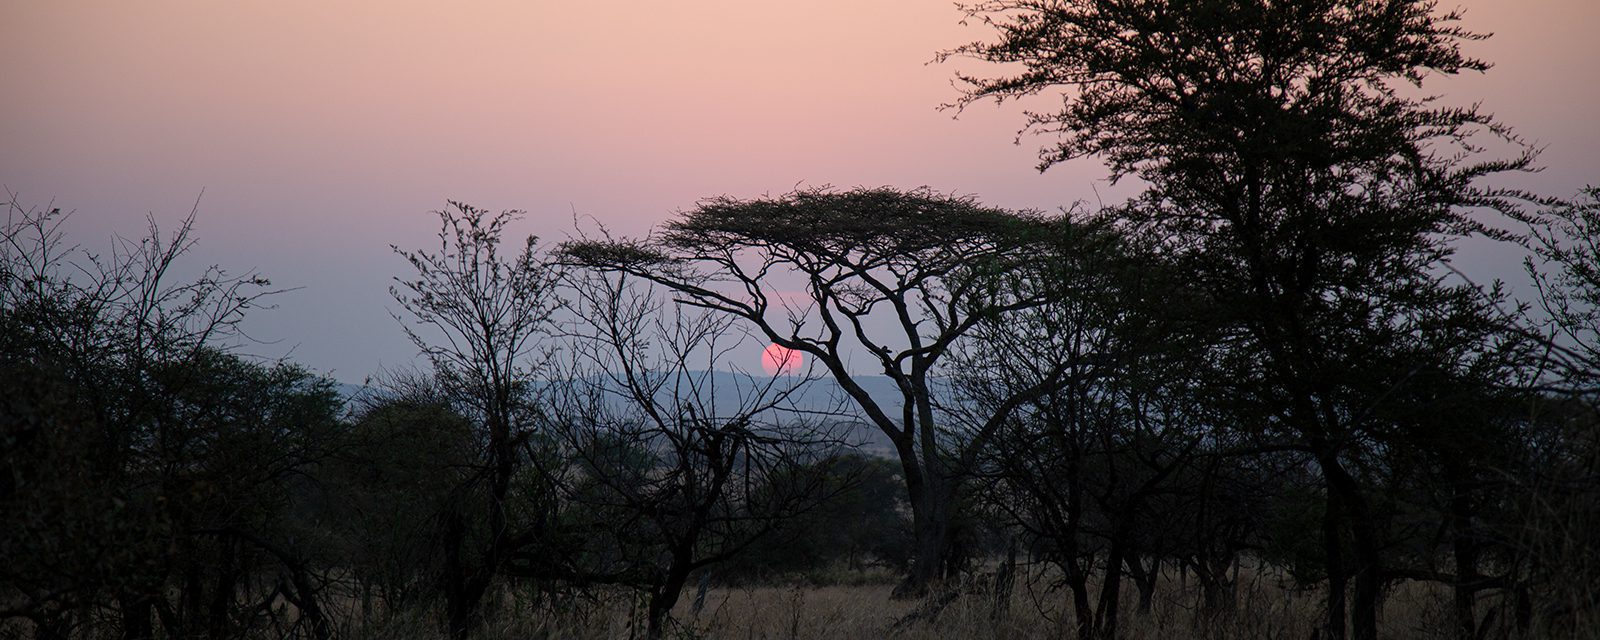 Sunset on the African savanna